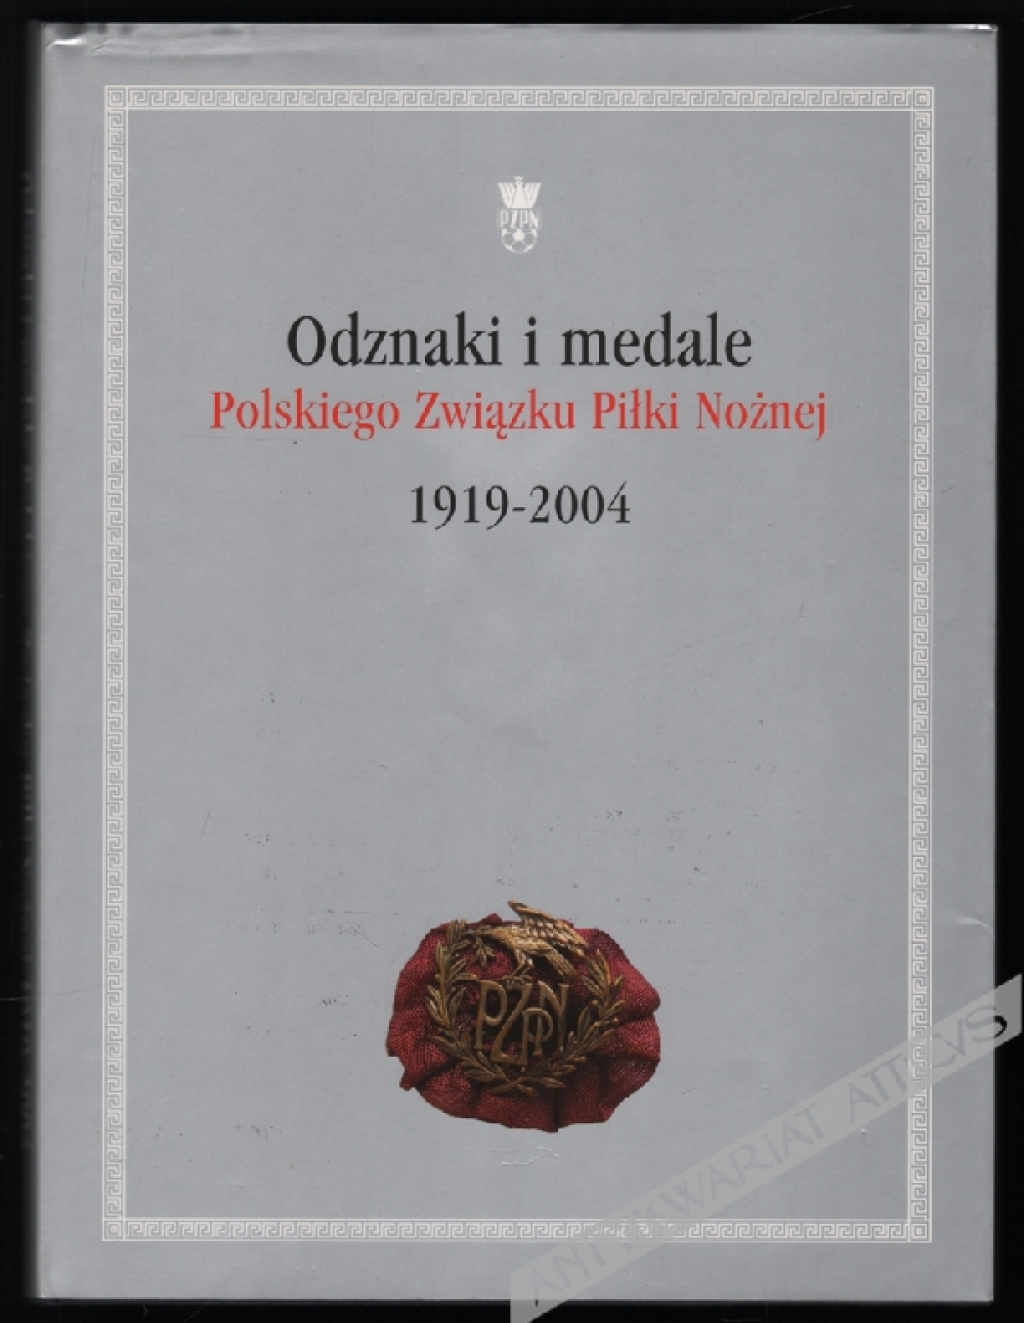 Odznaki i medale Polskiego Związku Piłki Nożnej 1919-2004